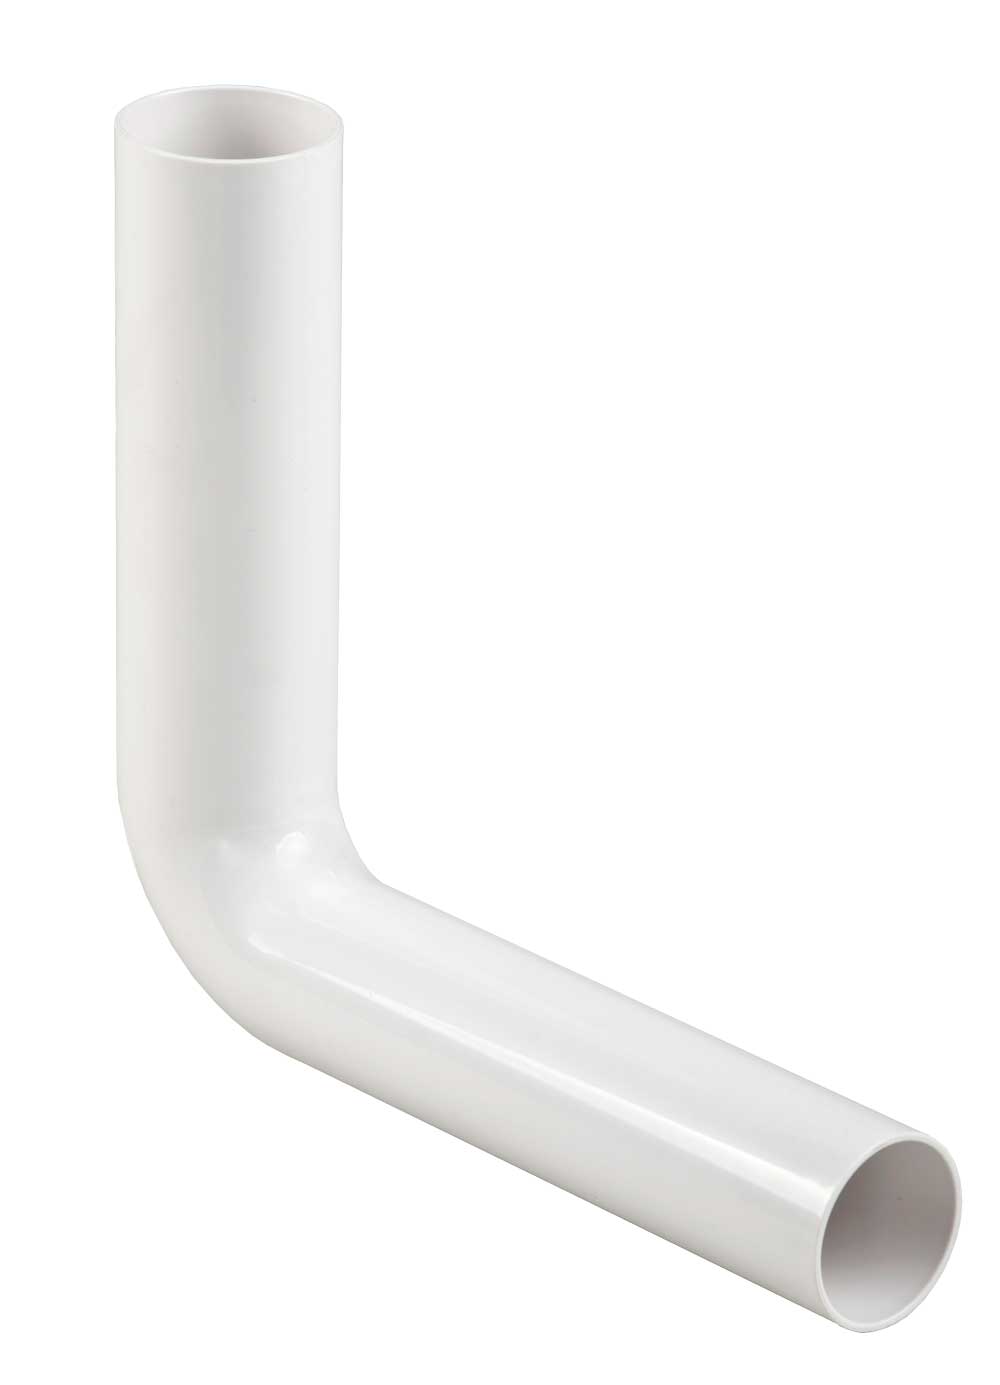 Flush pipe elbow 270 x 220 mm, white